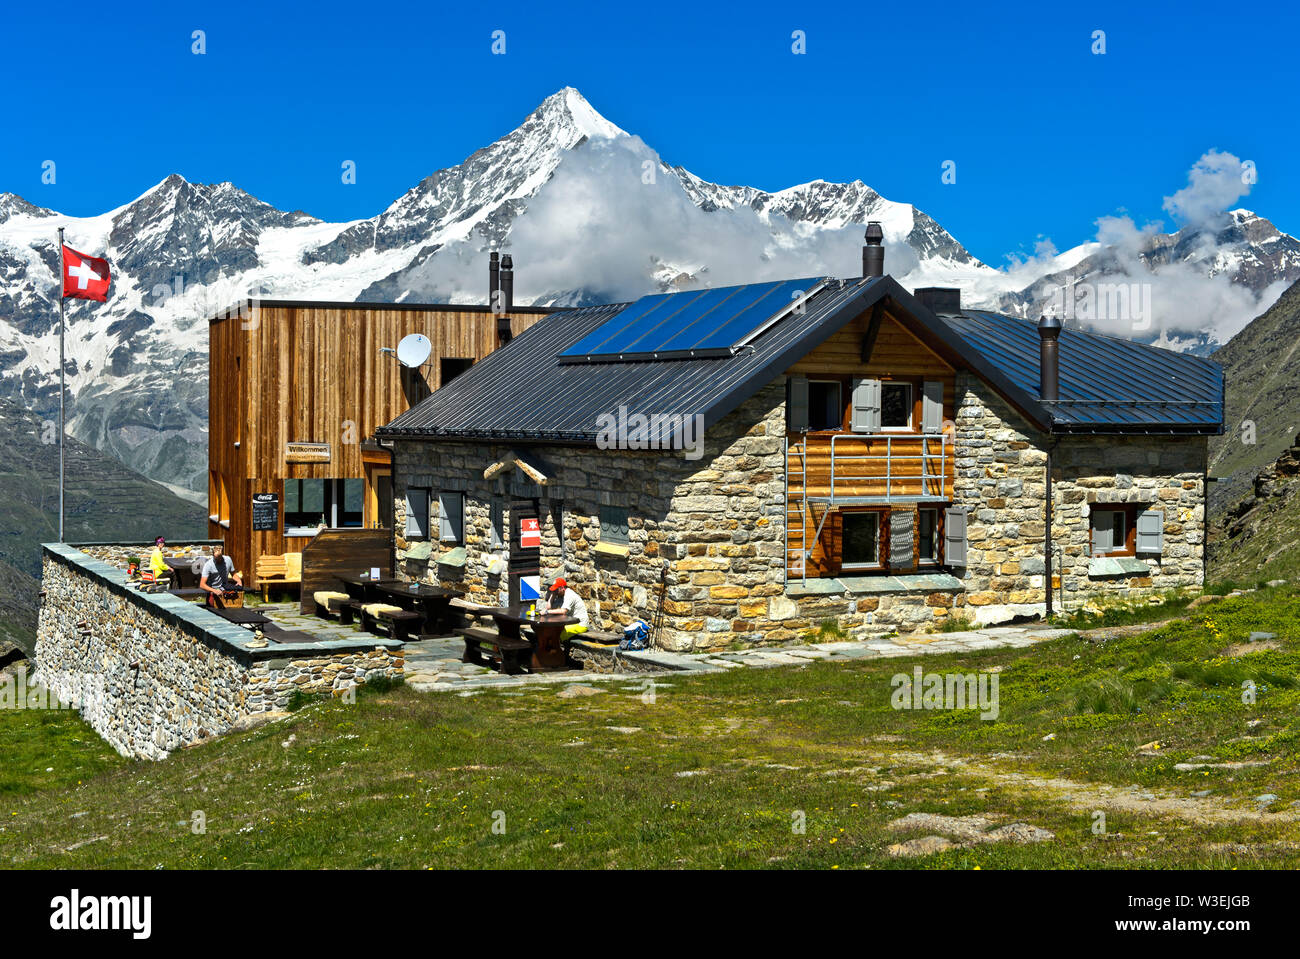 Le refuge de montagne Täschhütte en face de la pointe, Taeschalp Weisshorn, Valais, Suisse Banque D'Images